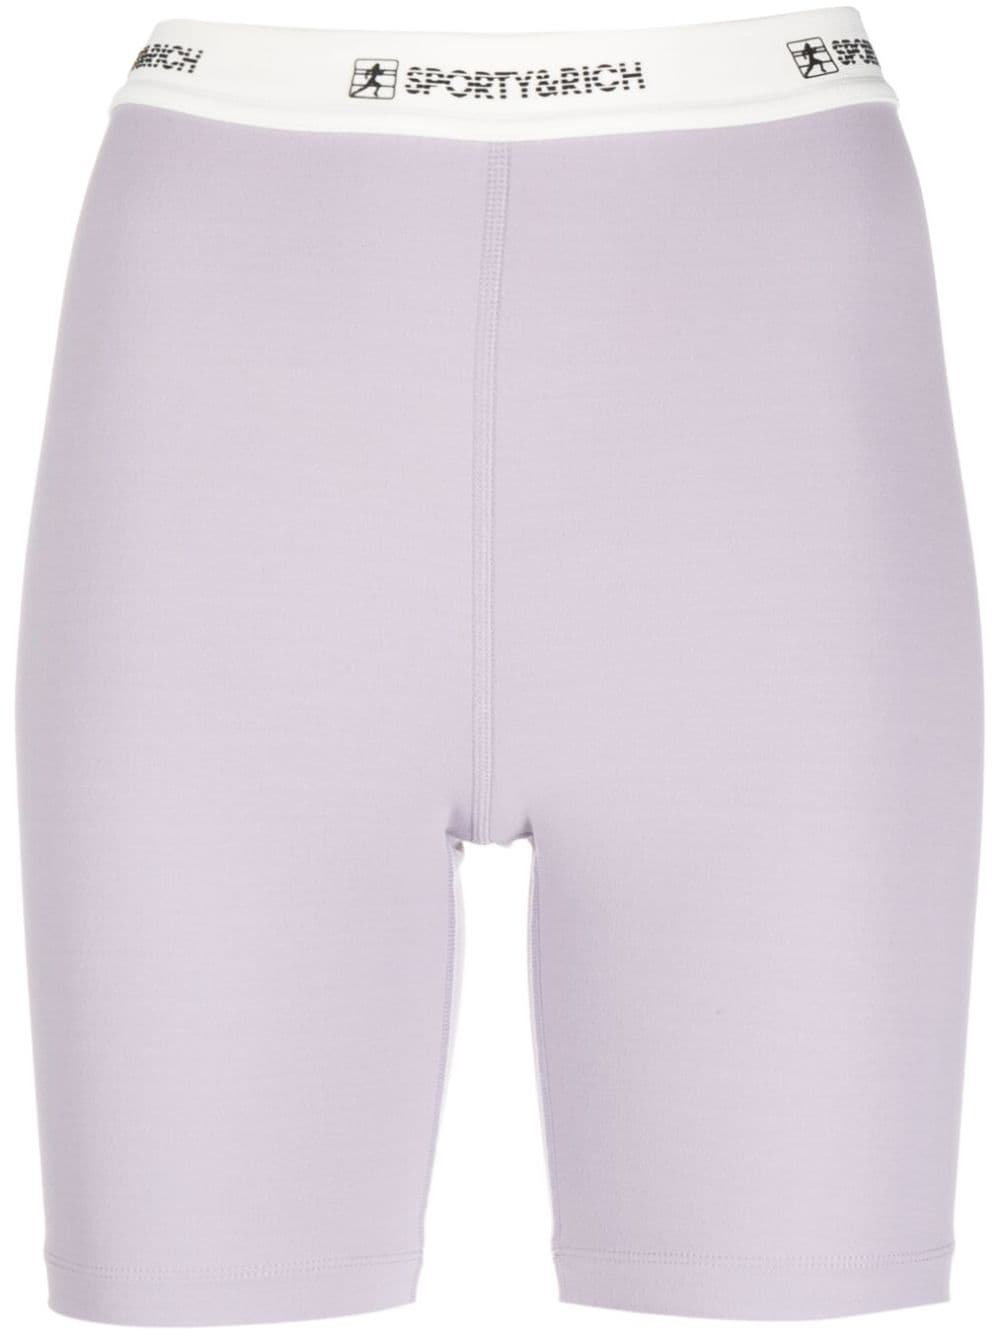 Shorts con banda logo in lilla -  donna SPORTY & RICH | SH835LI